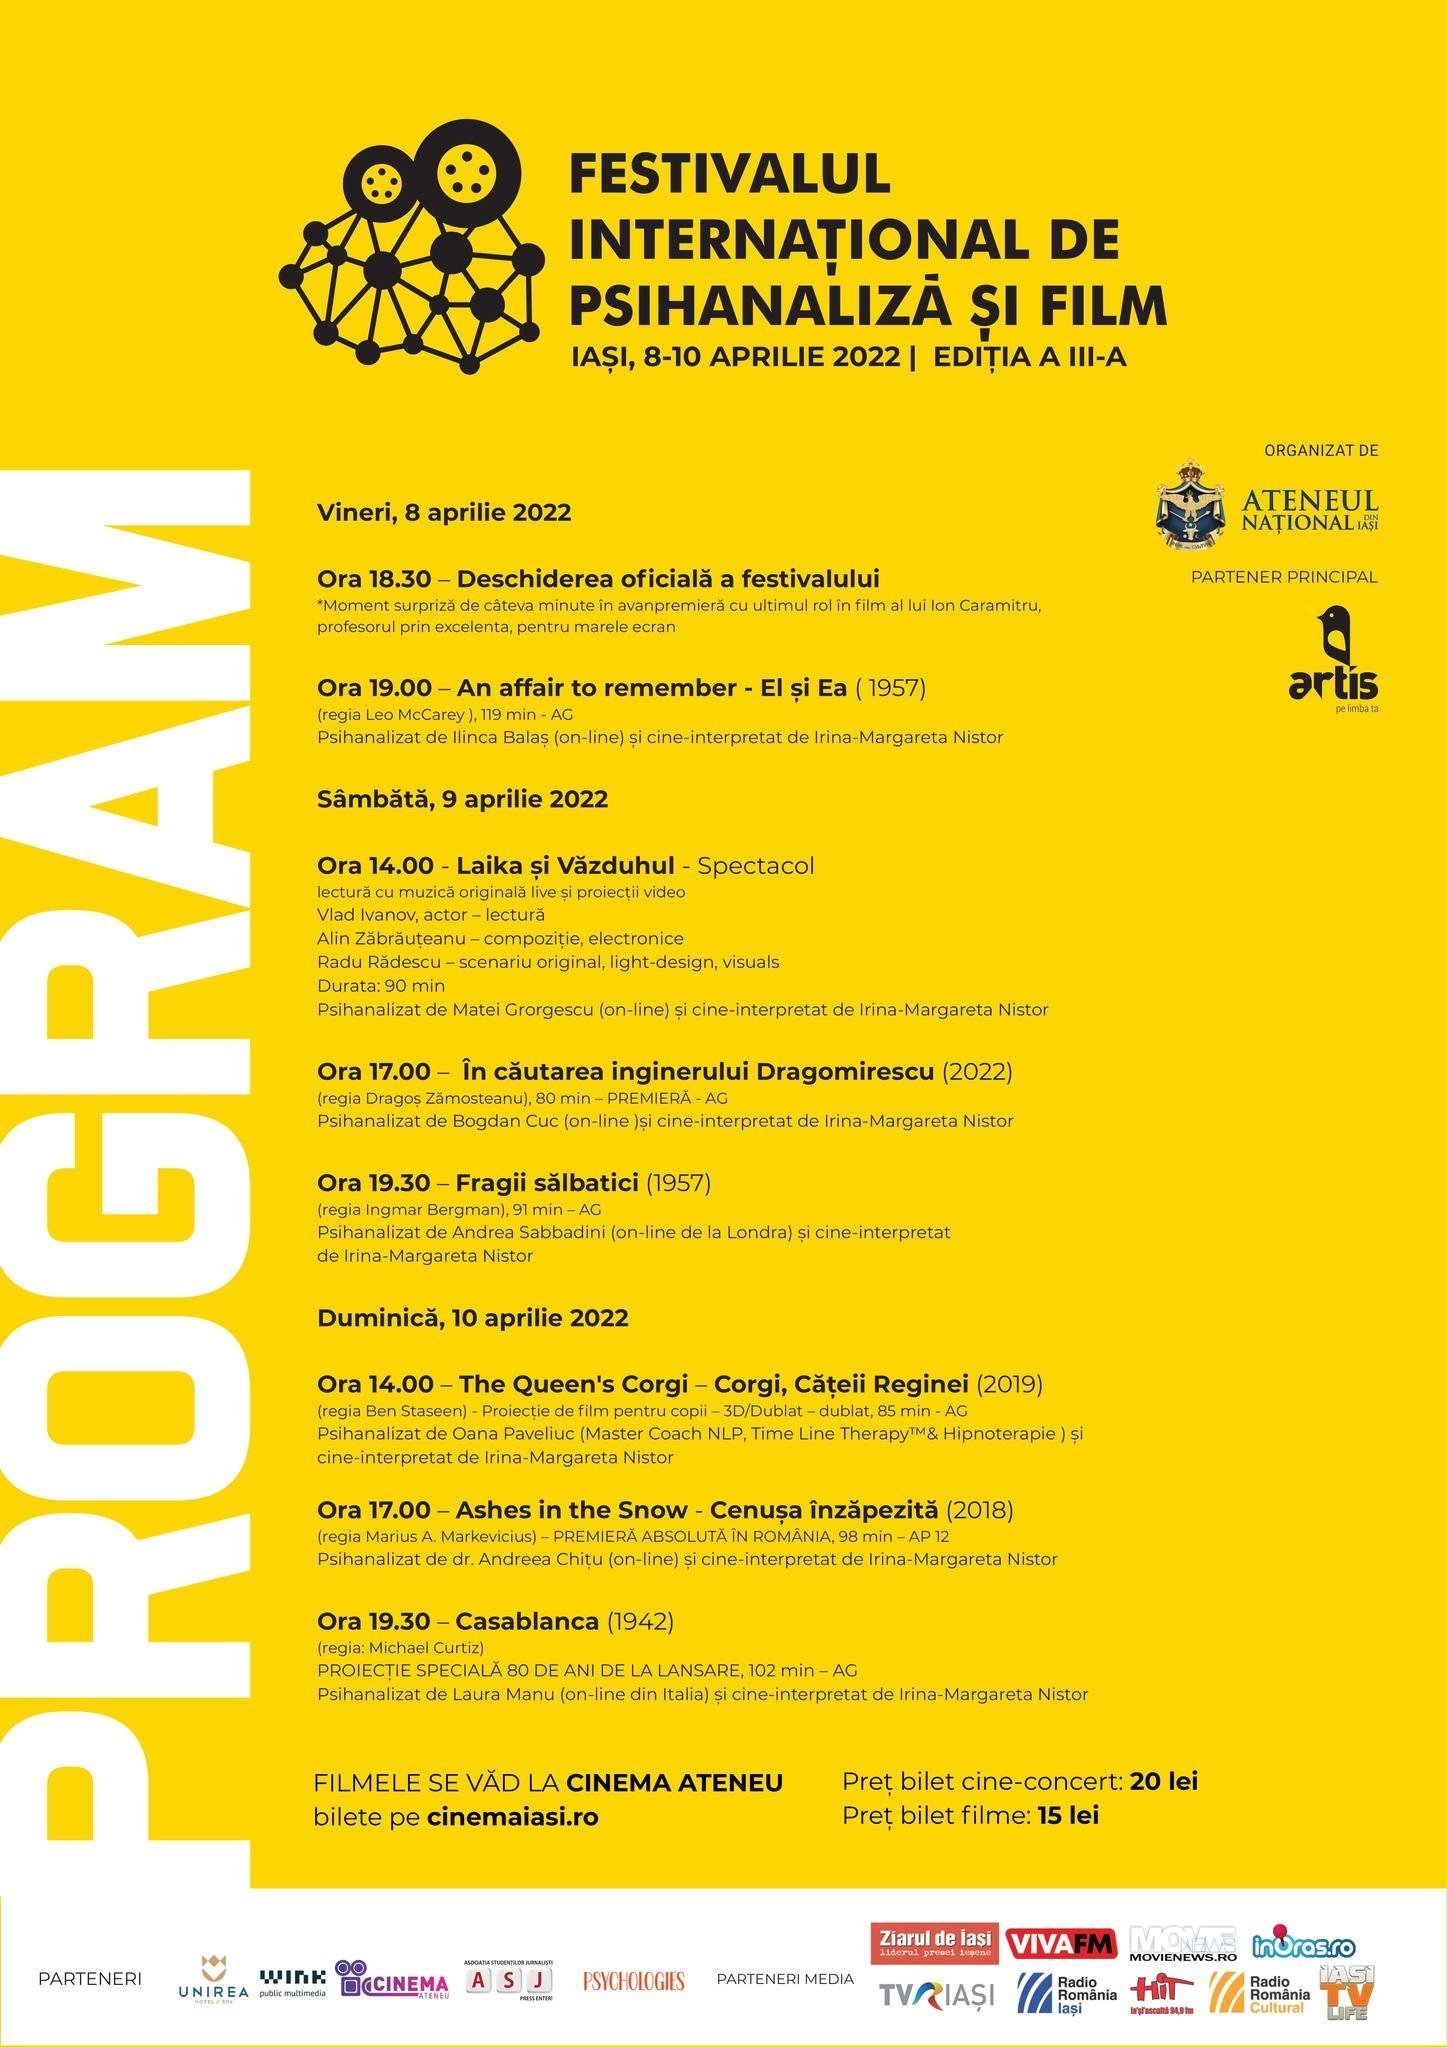 Festival Internaţional de Psihanaliză şi Film, ediţia a III-a, la Ateneu